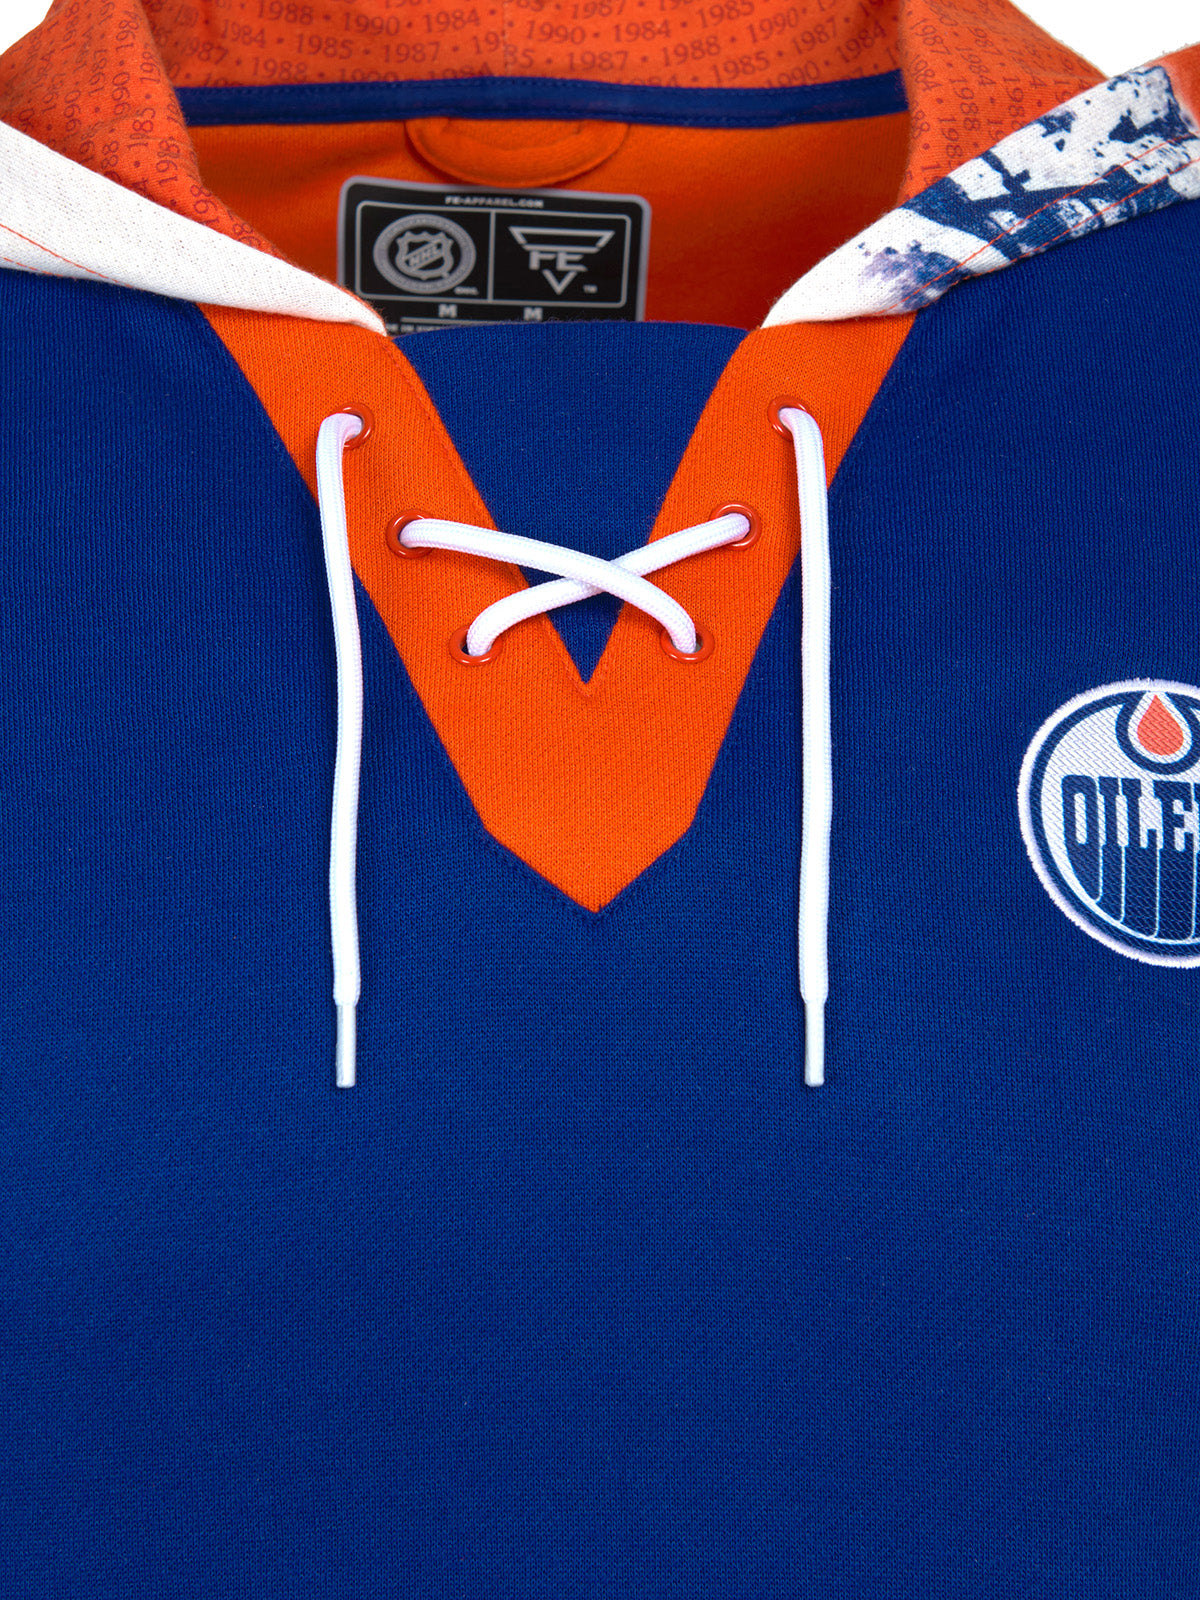 Edmonton Oilers Lace-Up Hoodie